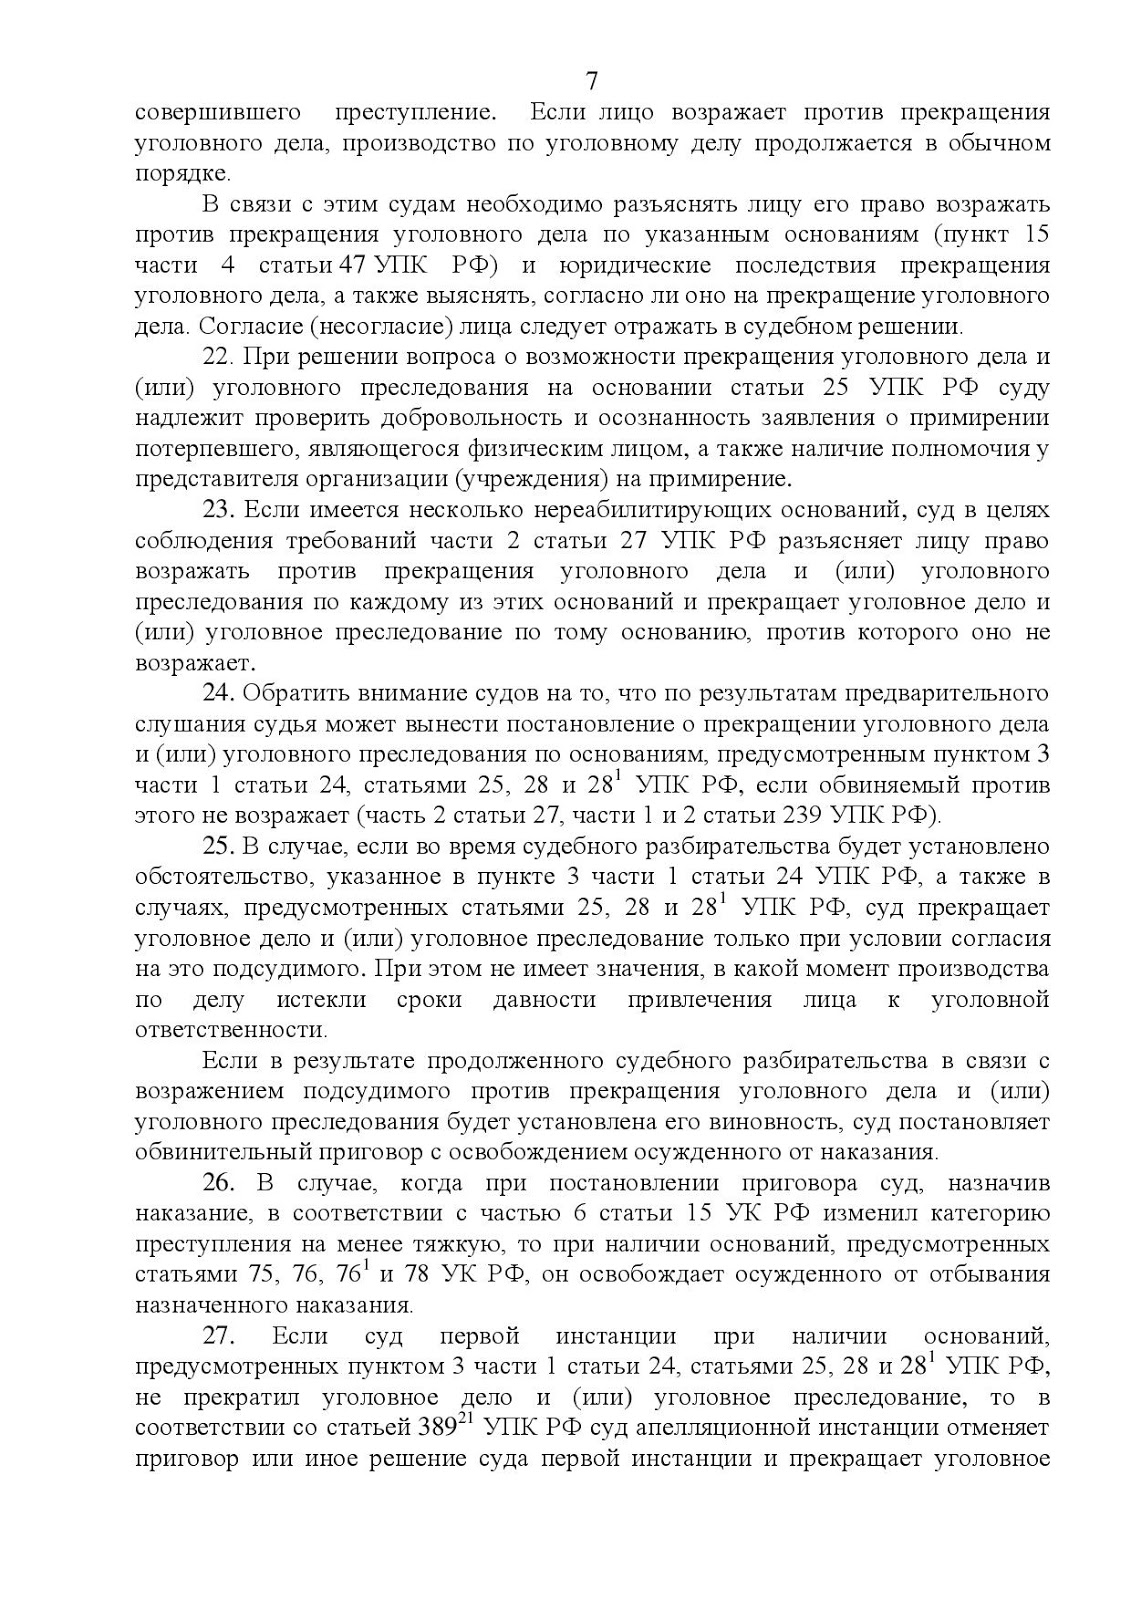 Постановление пленума верховного суда о половых преступлениях. Пленум от 19.12.2013 #41.